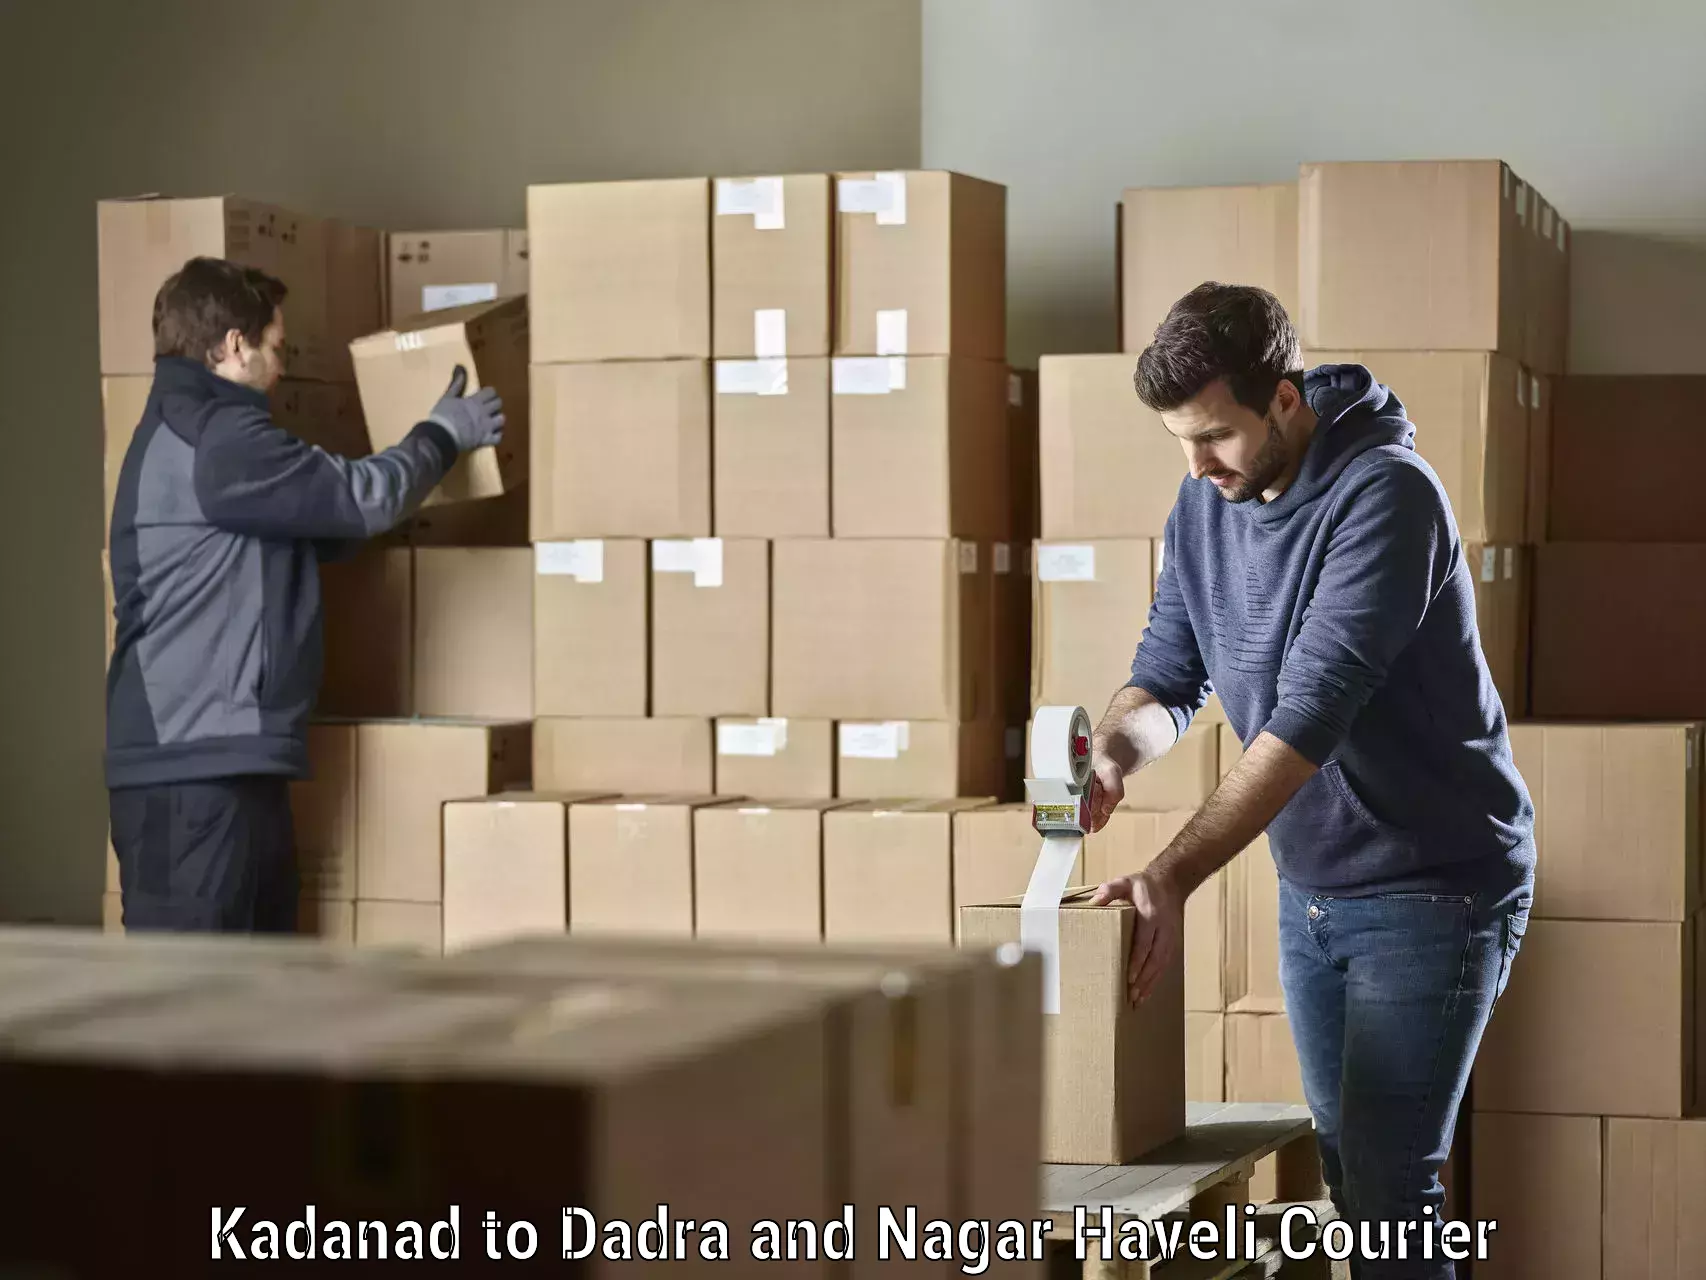 Reliable shipping partners Kadanad to Dadra and Nagar Haveli